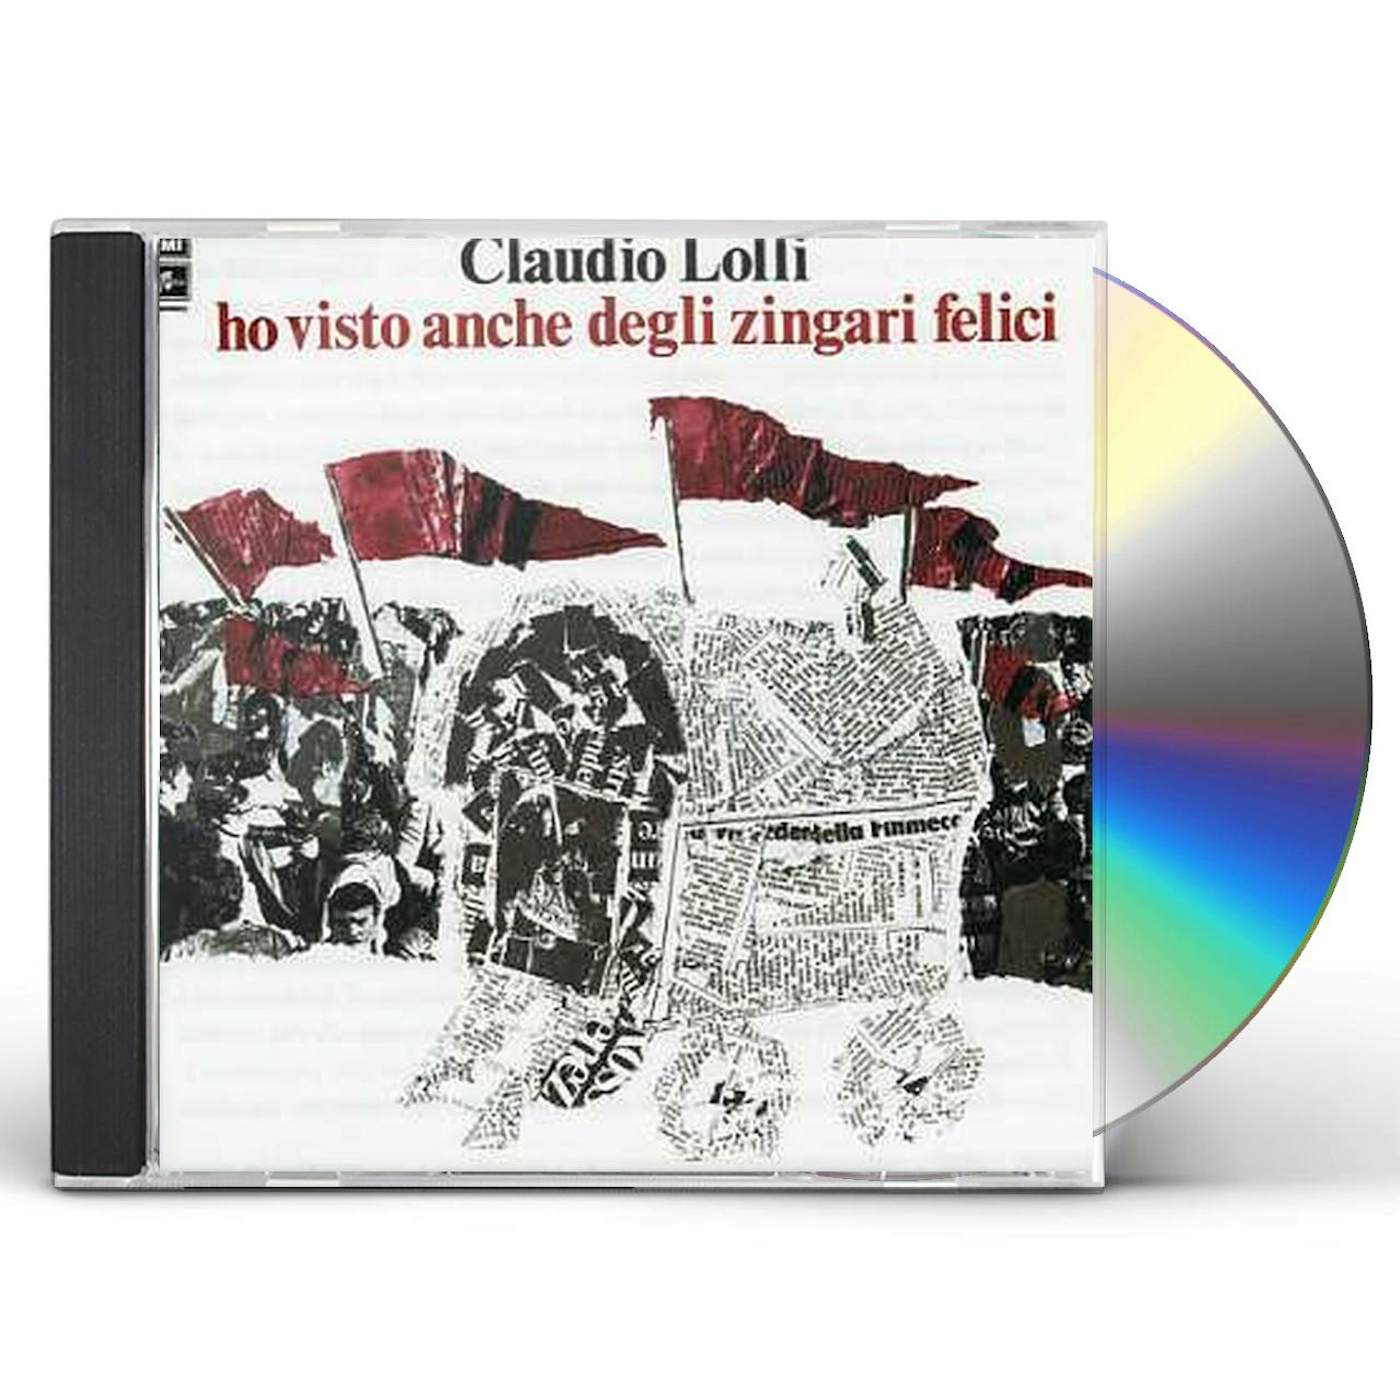 Claudio Lolli HO VISTO ANCHE DEGLI ZINGARI FELICI CD